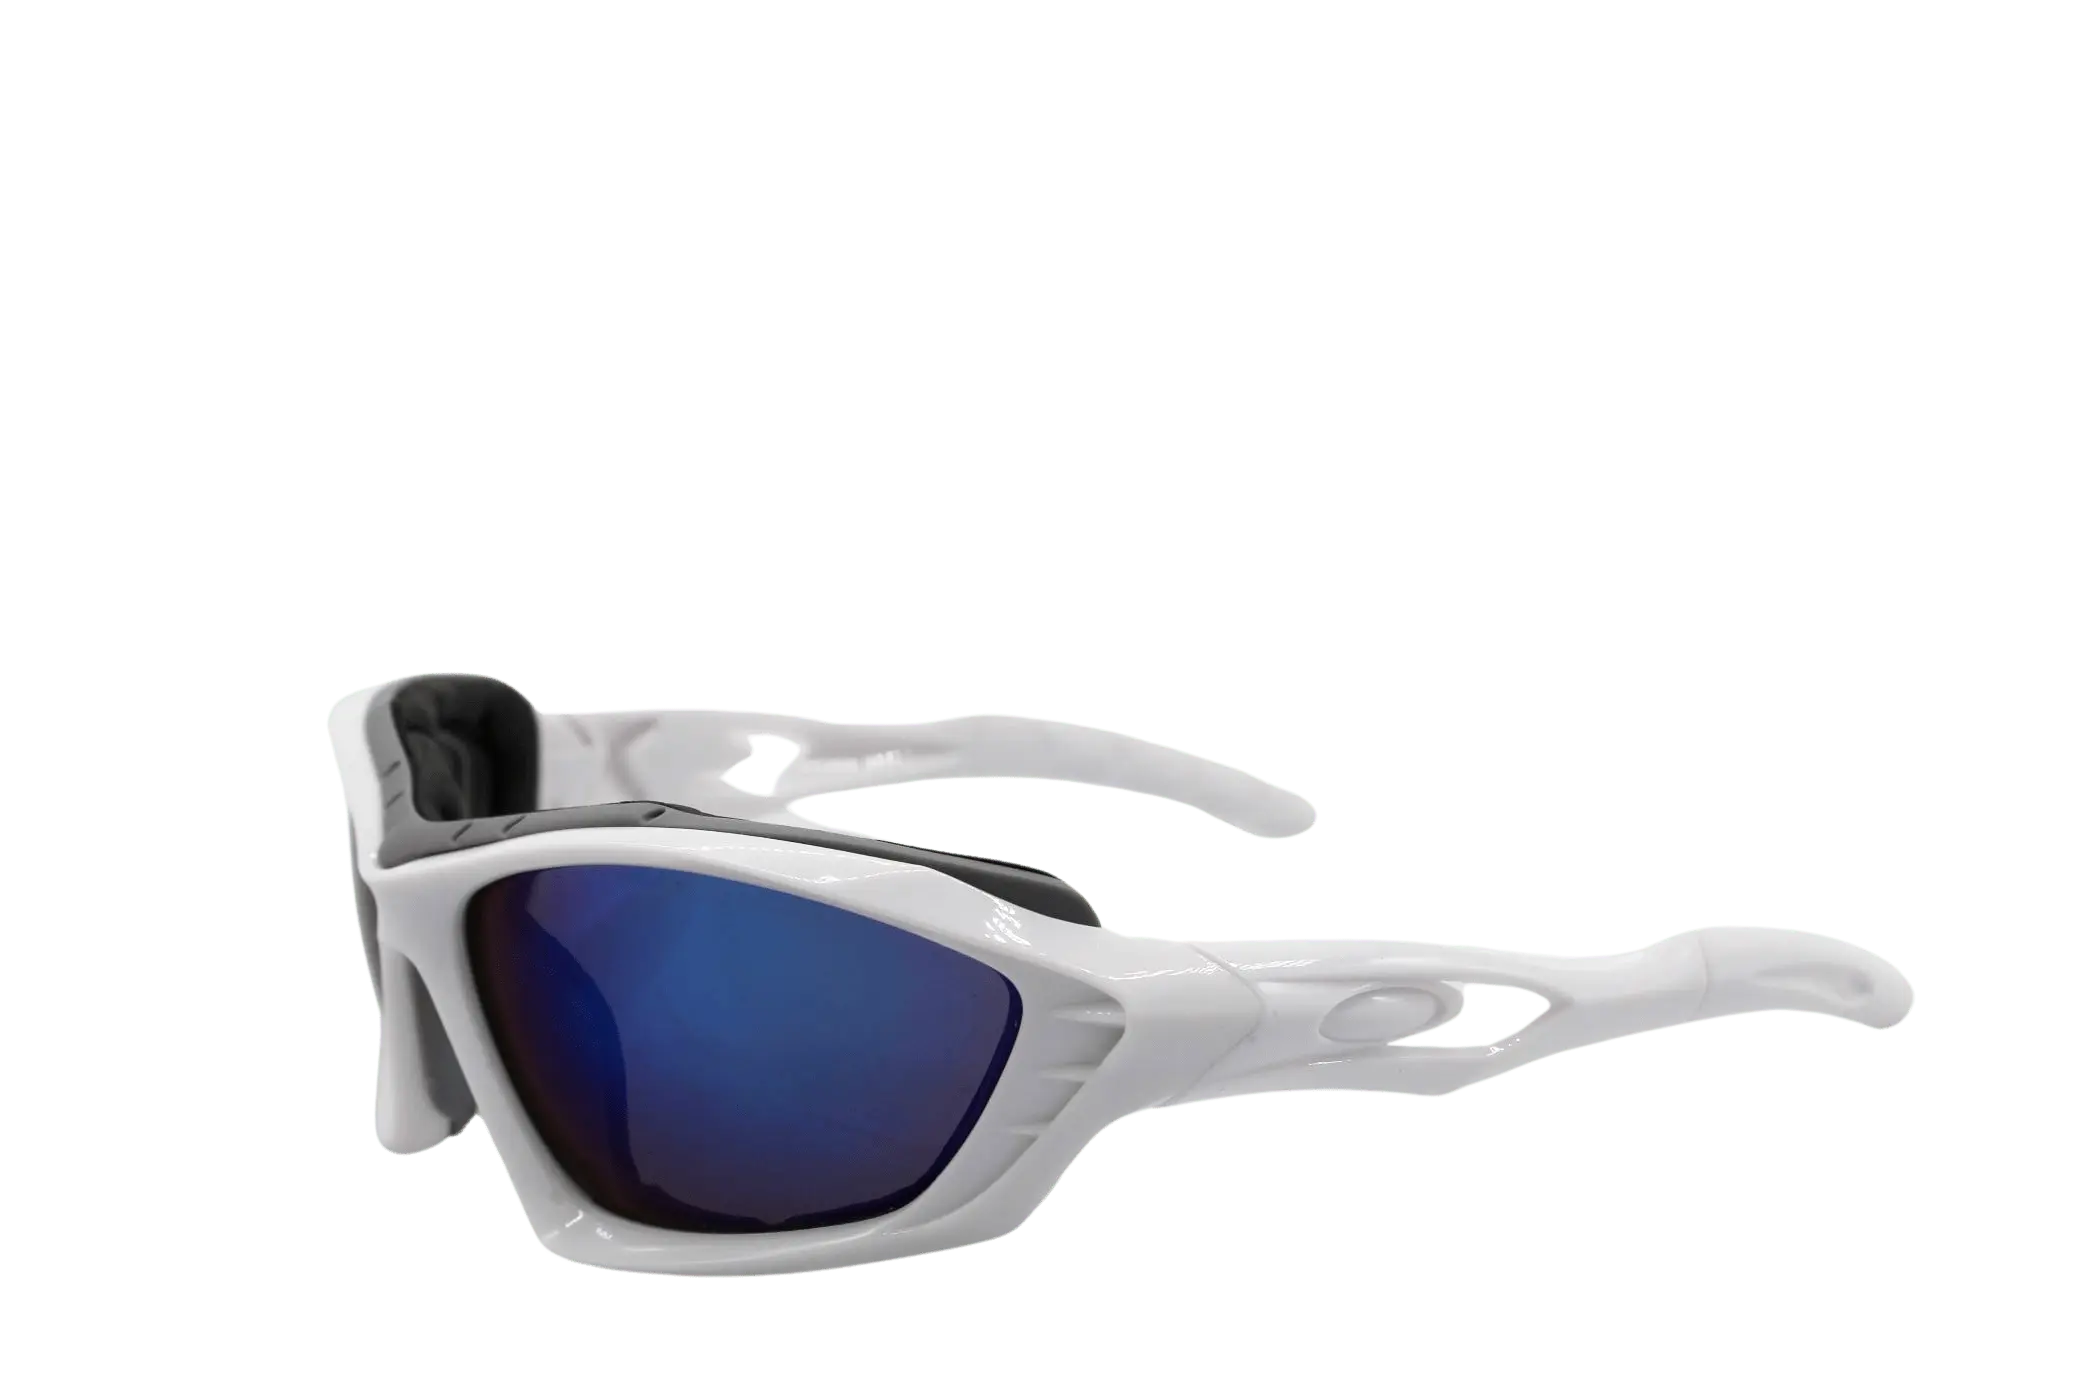 Hochenergetische Weiß-Blaue Raver-Brille